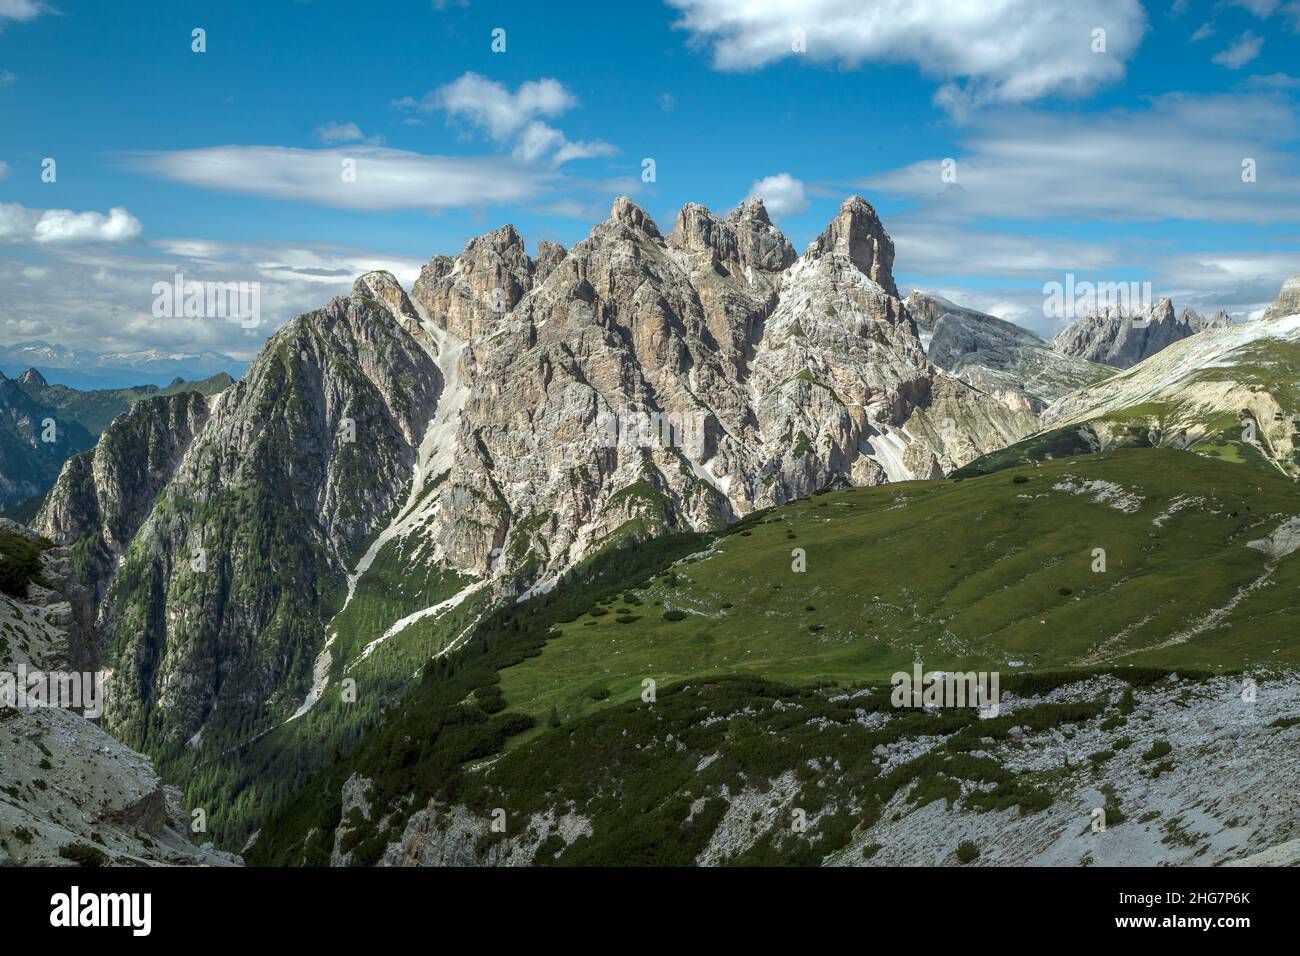 Croda di sesto dolomite dans le parc national de Tre cime, Trentin, Italie Banque D'Images